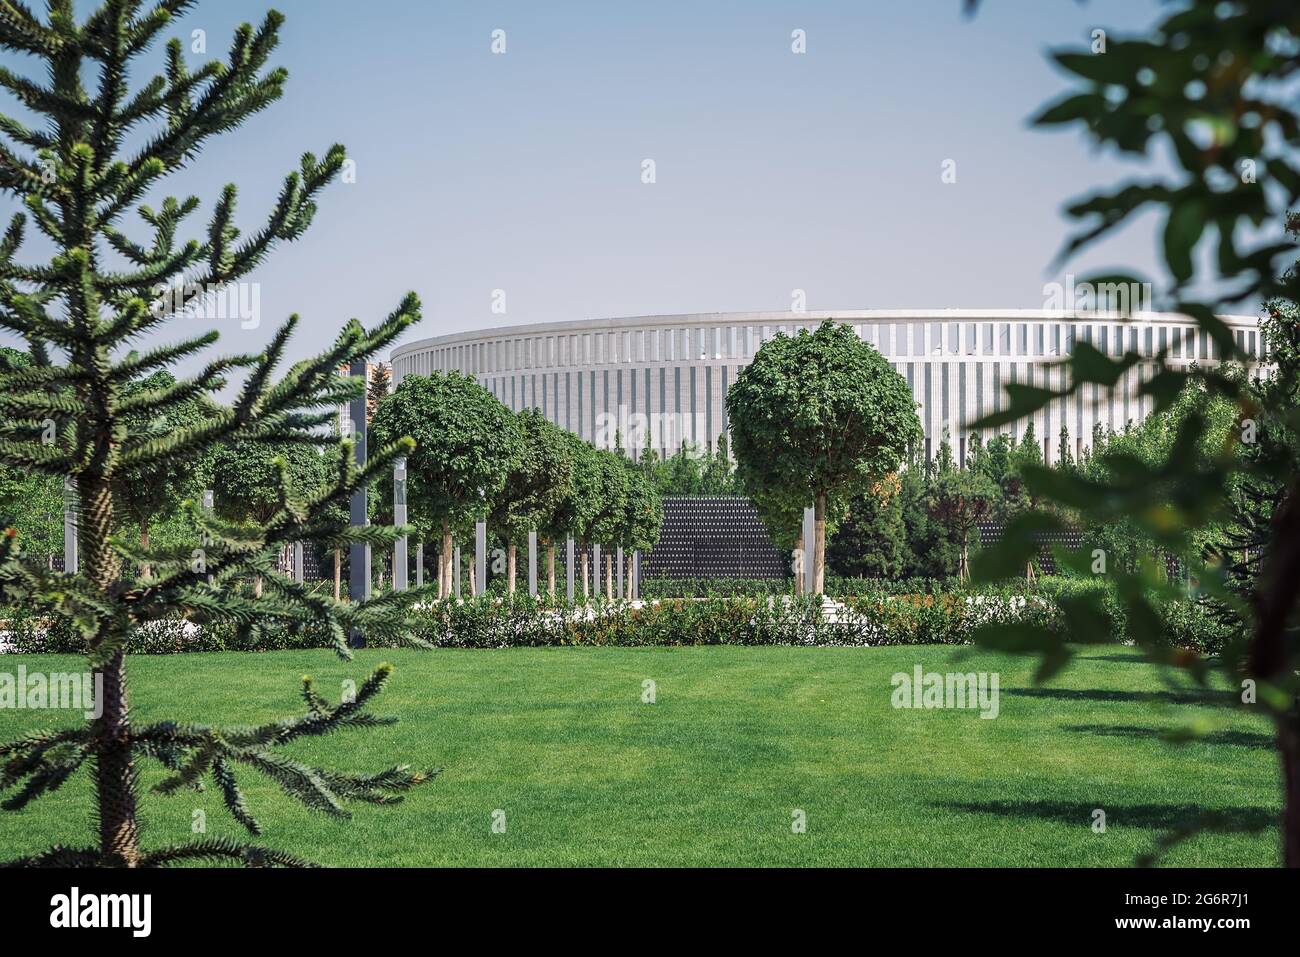 Parco cittadino di Krasnodar o Galitsky Park. Paesaggio con erba verde, alberi decorativi e la facciata bianca dello stadio Foto Stock